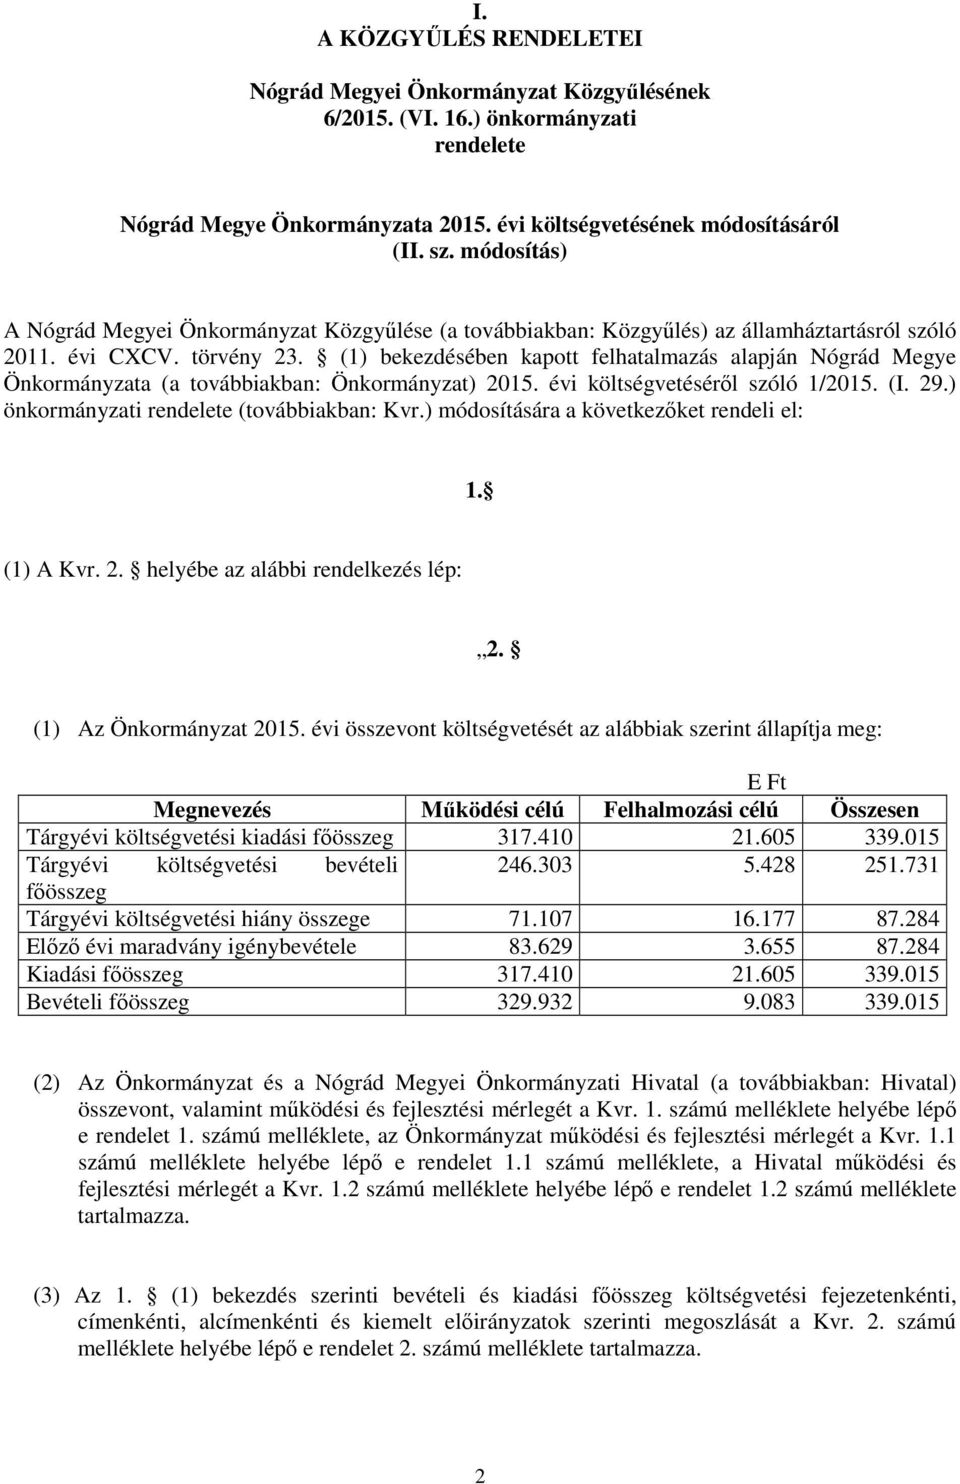 (1) bekezdésében kapott felhatalmazás alapján Nógrád Megye Önkormányzata (a továbbiakban: Önkormányzat) 2015. évi költségvetéséről szóló 1/2015. (I. 29.) önkormányzati rendelete (továbbiakban: Kvr.